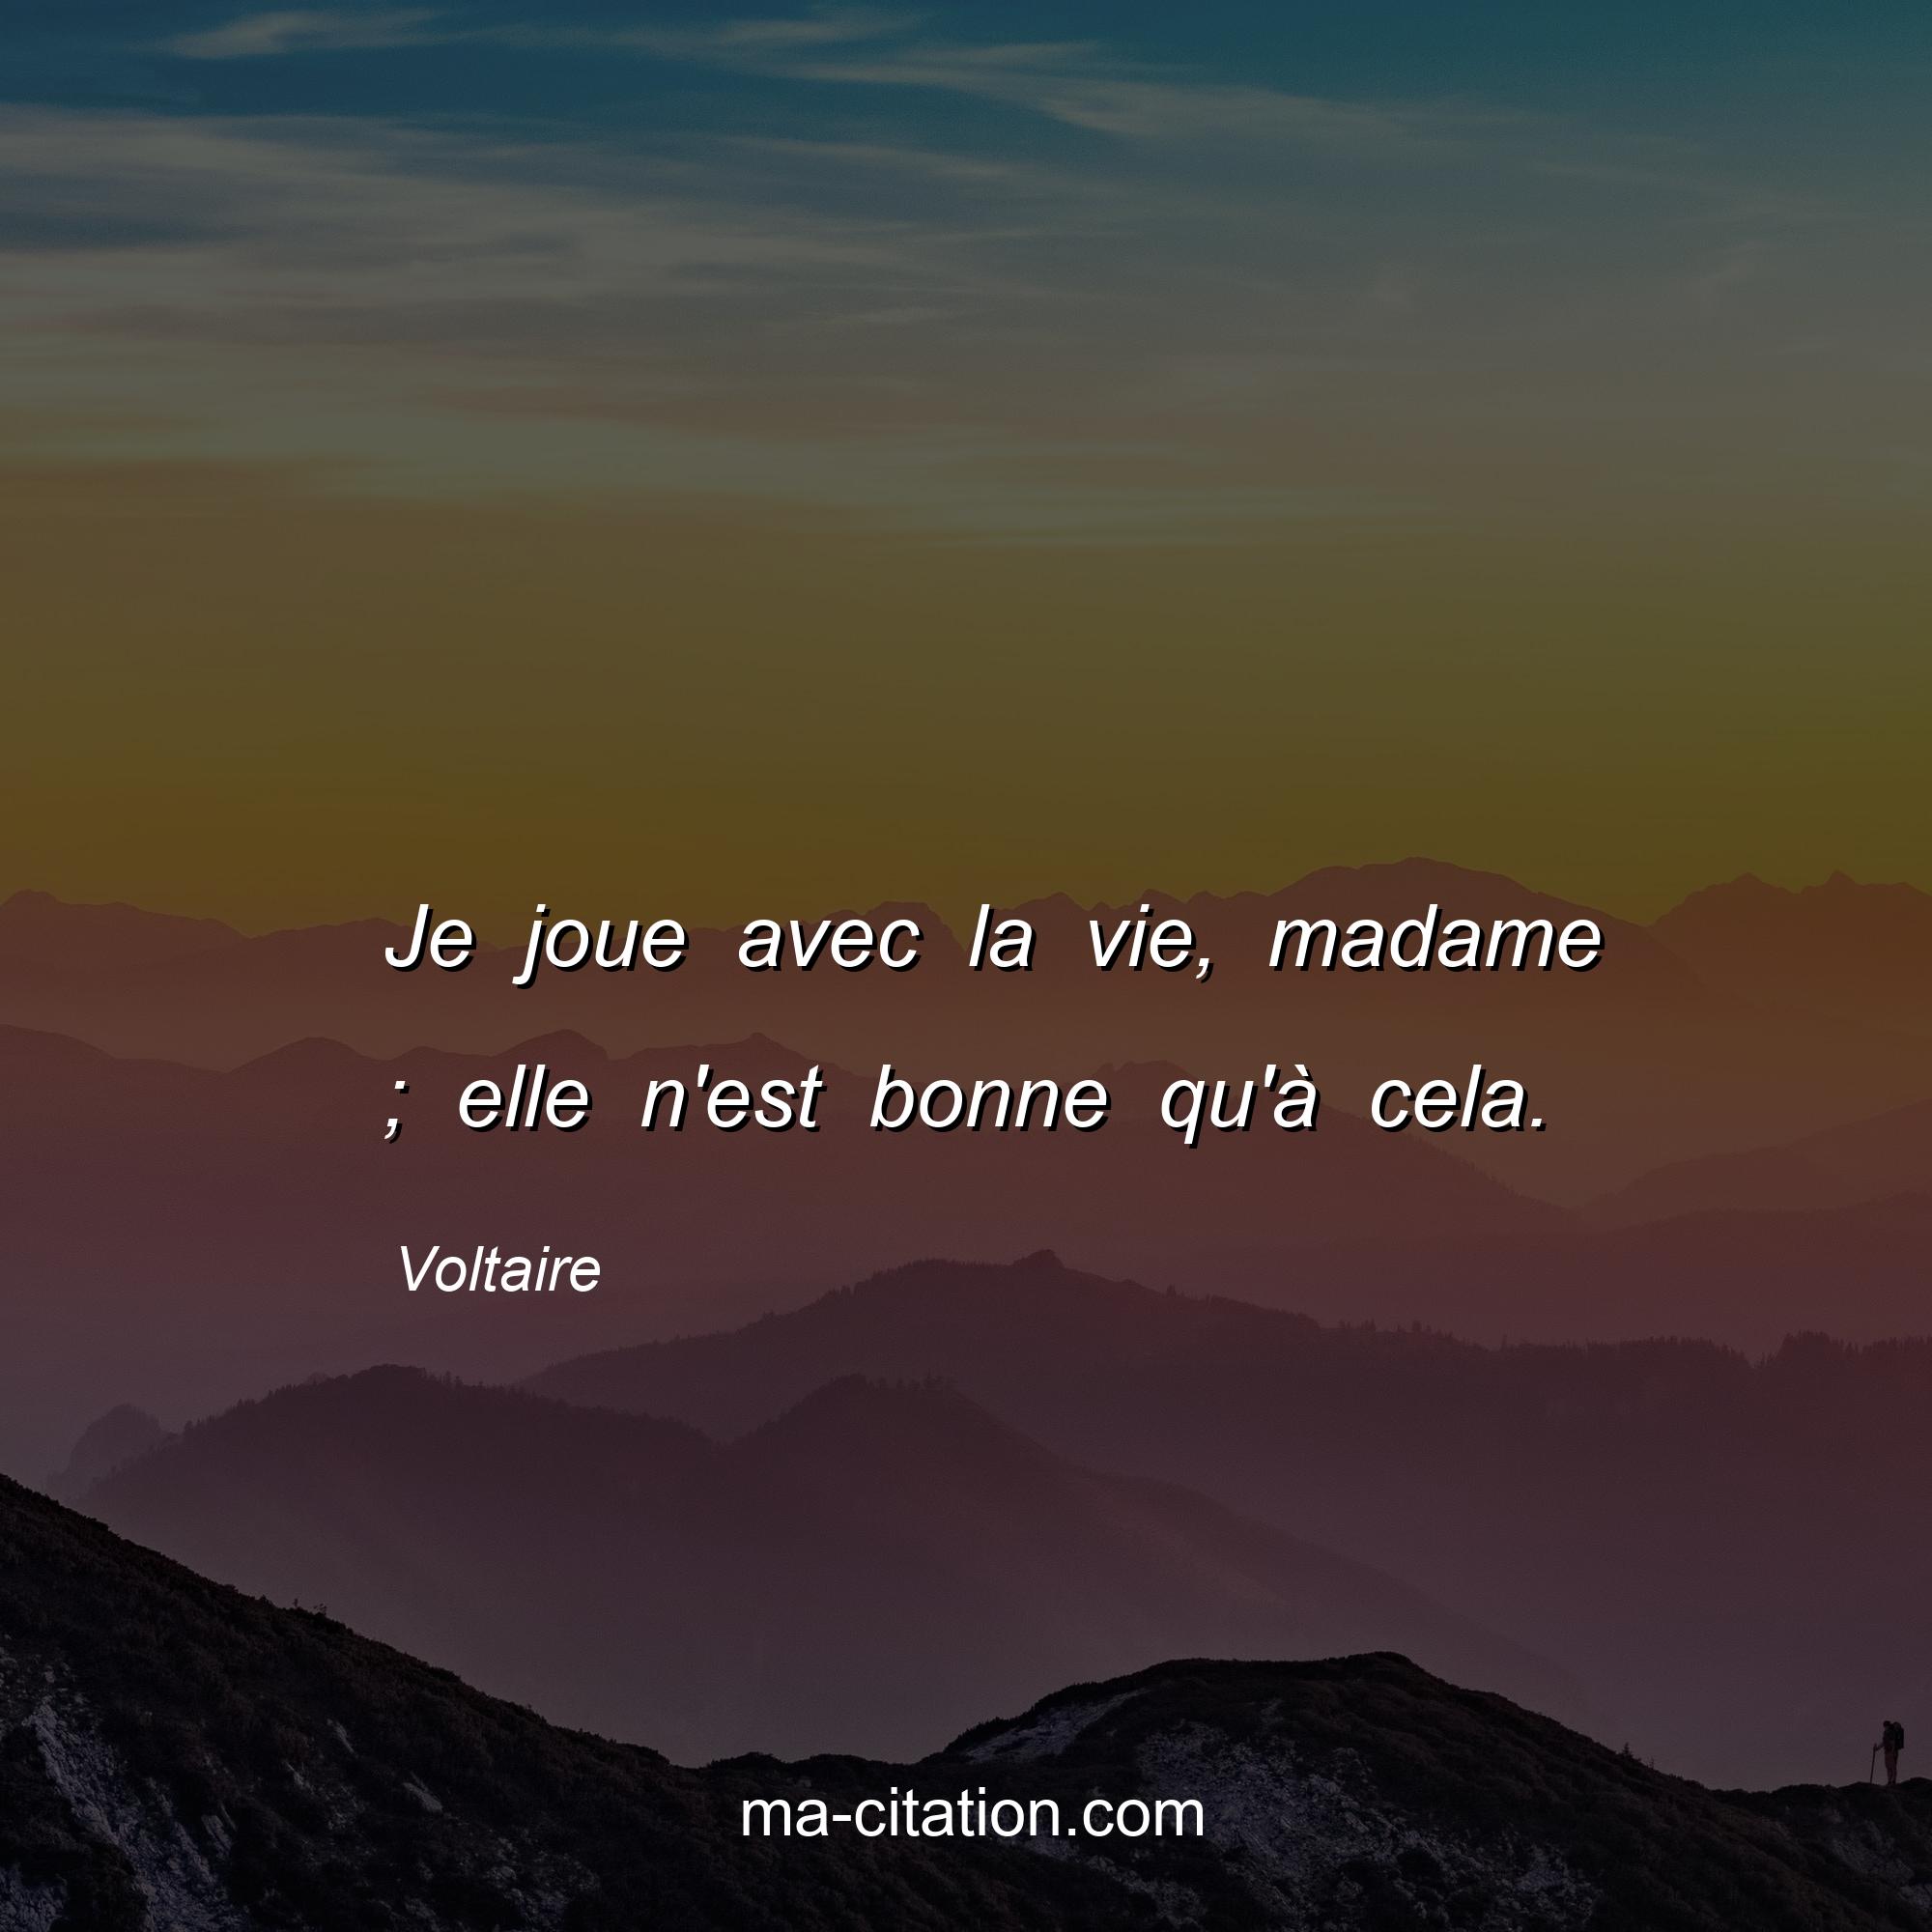 Voltaire : Je joue avec la vie, madame ; elle n'est bonne qu'à cela.